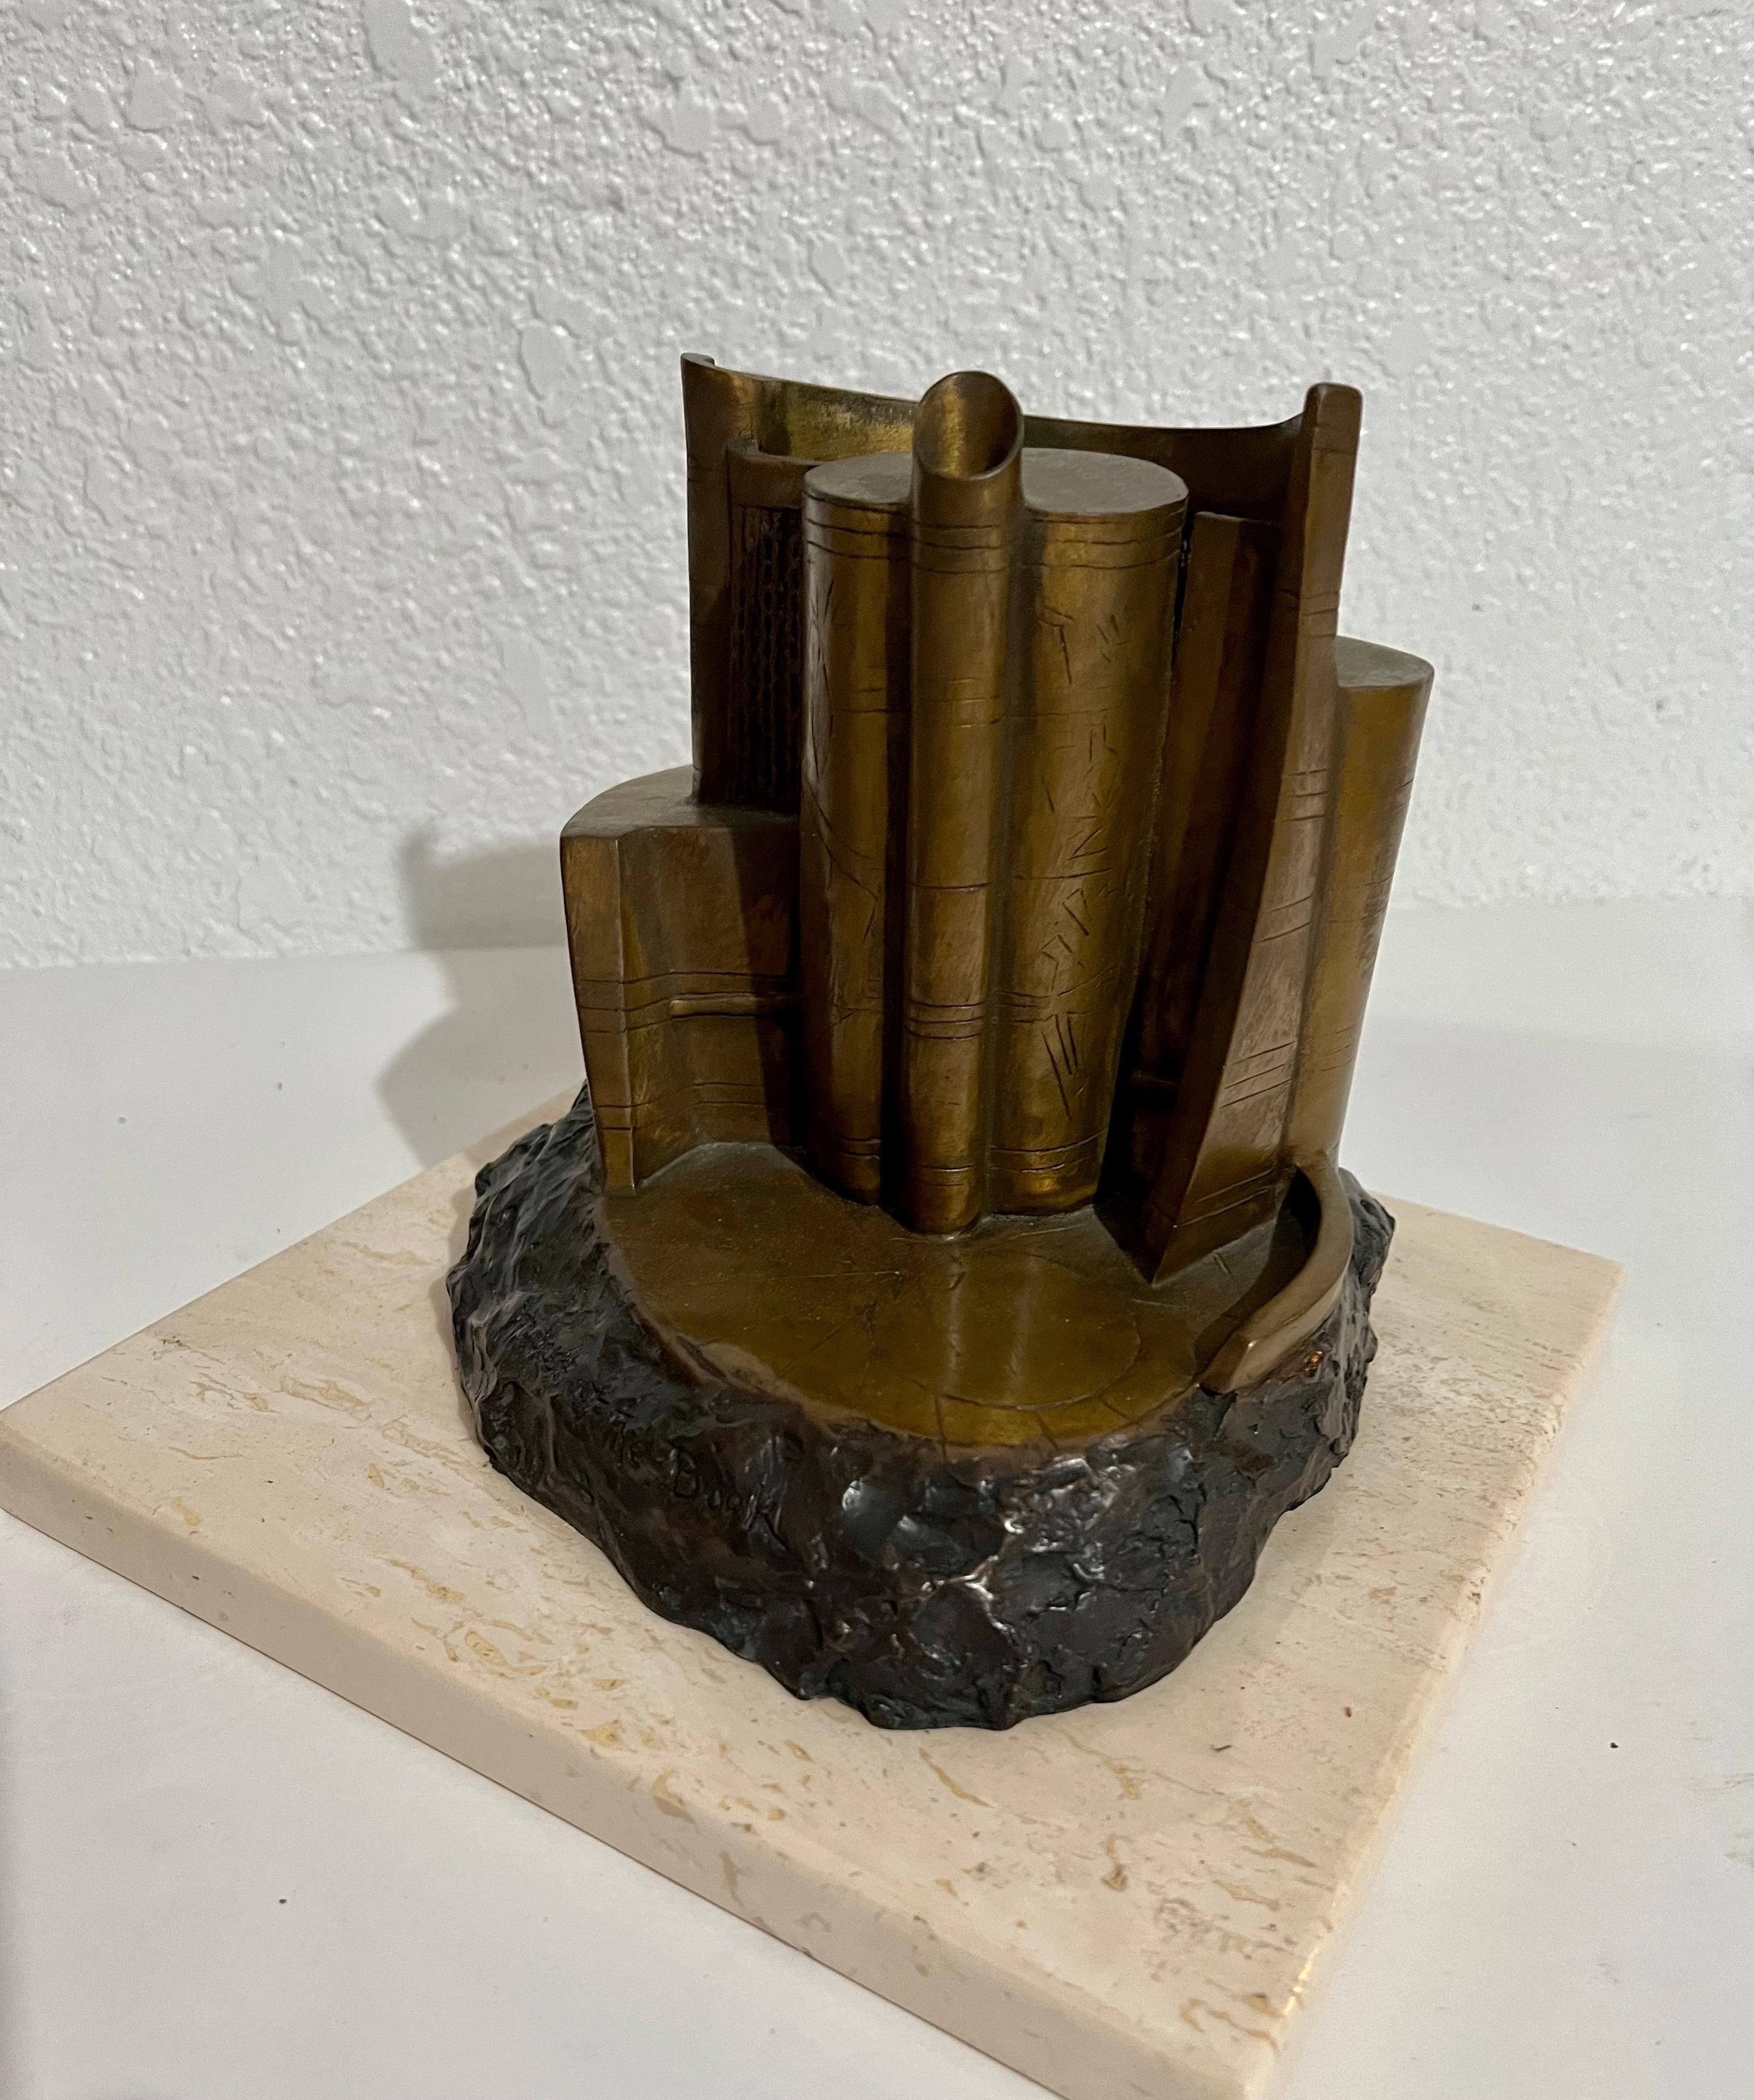 Abstrakte Bronze-Bücherskulptur aus dem Space Age, LA, Kalifornien, Moderne – Sculpture von Charna Rickey